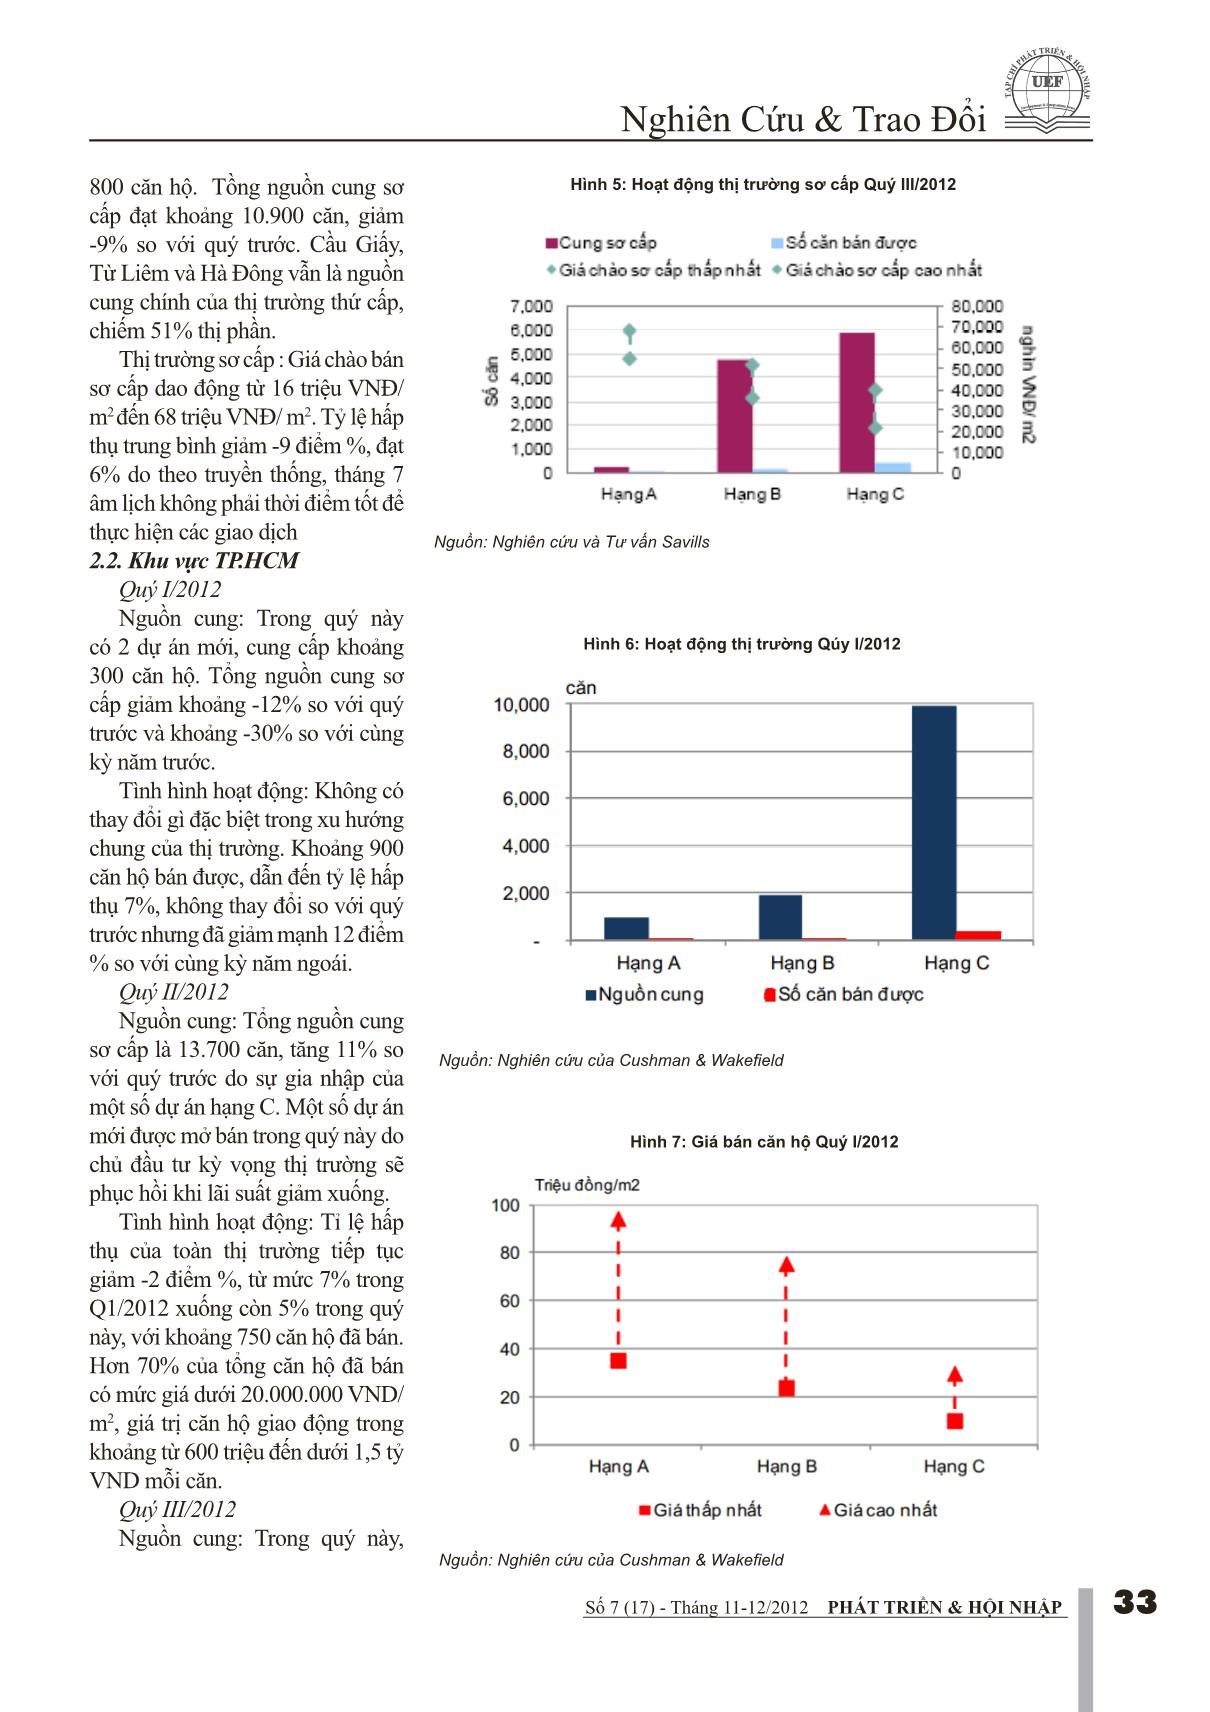 Tác động của chính sách vĩ mô 9 tháng đầu năm lên giá căn hộ Quý IV/2012 trang 3